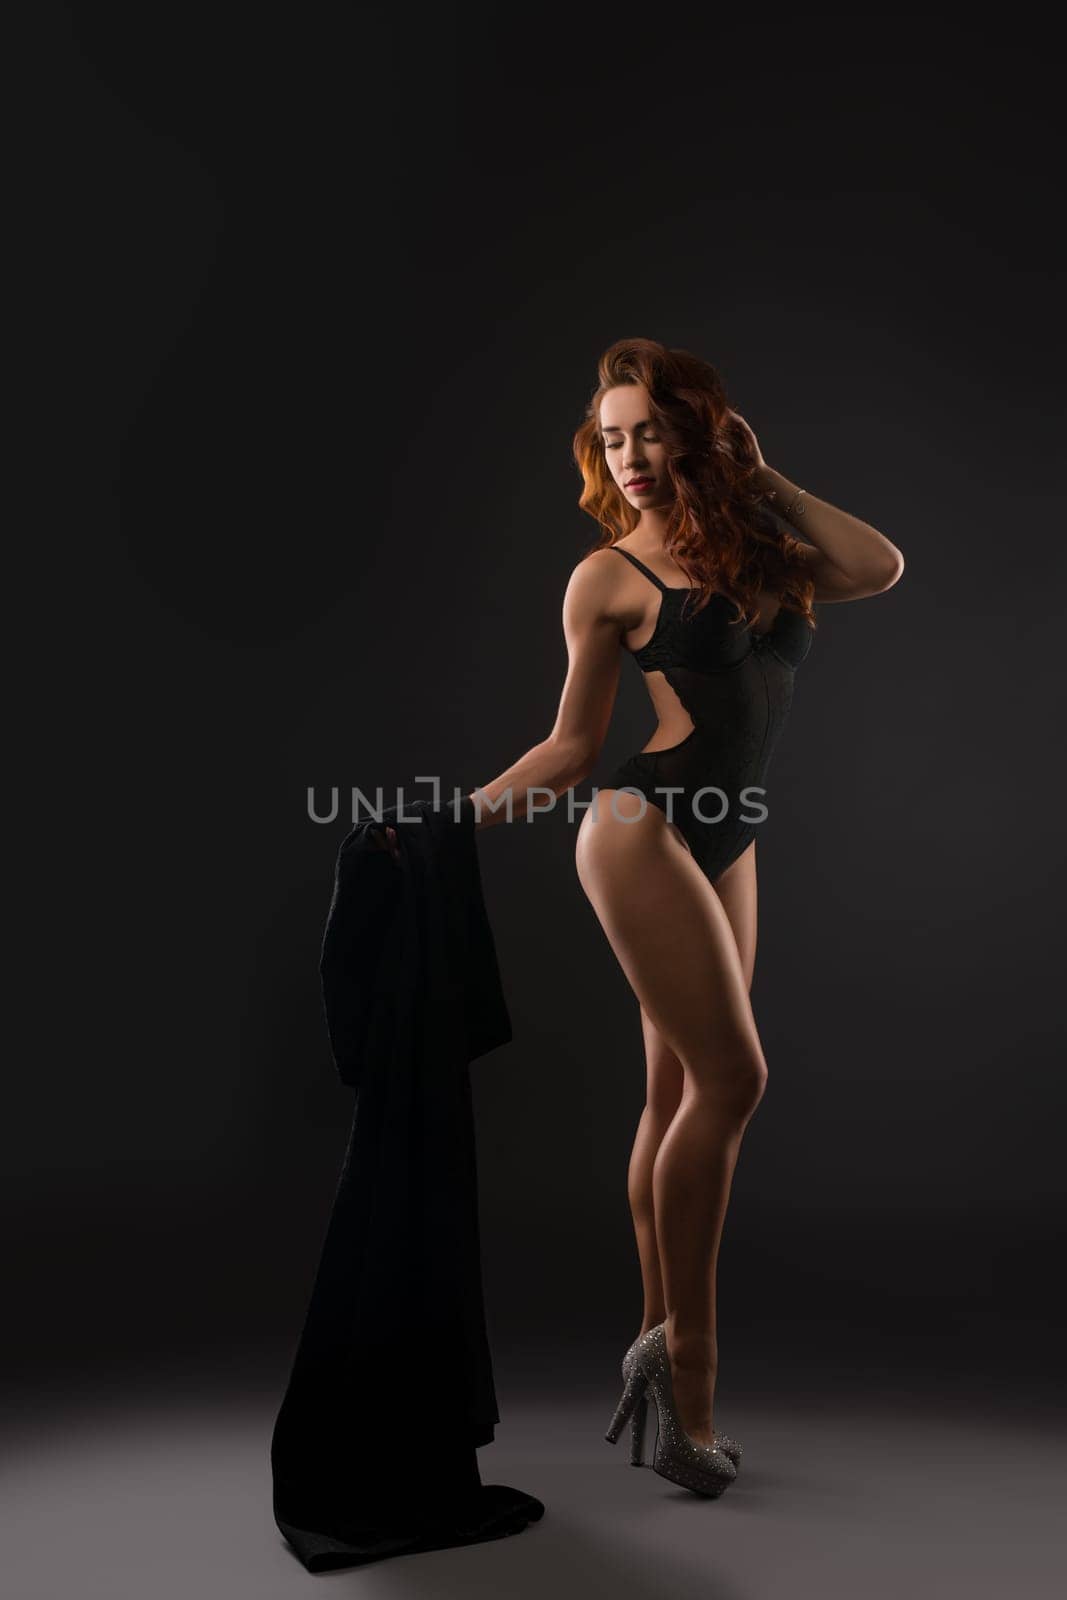 Studio image of sexy underwear model posing in high heels